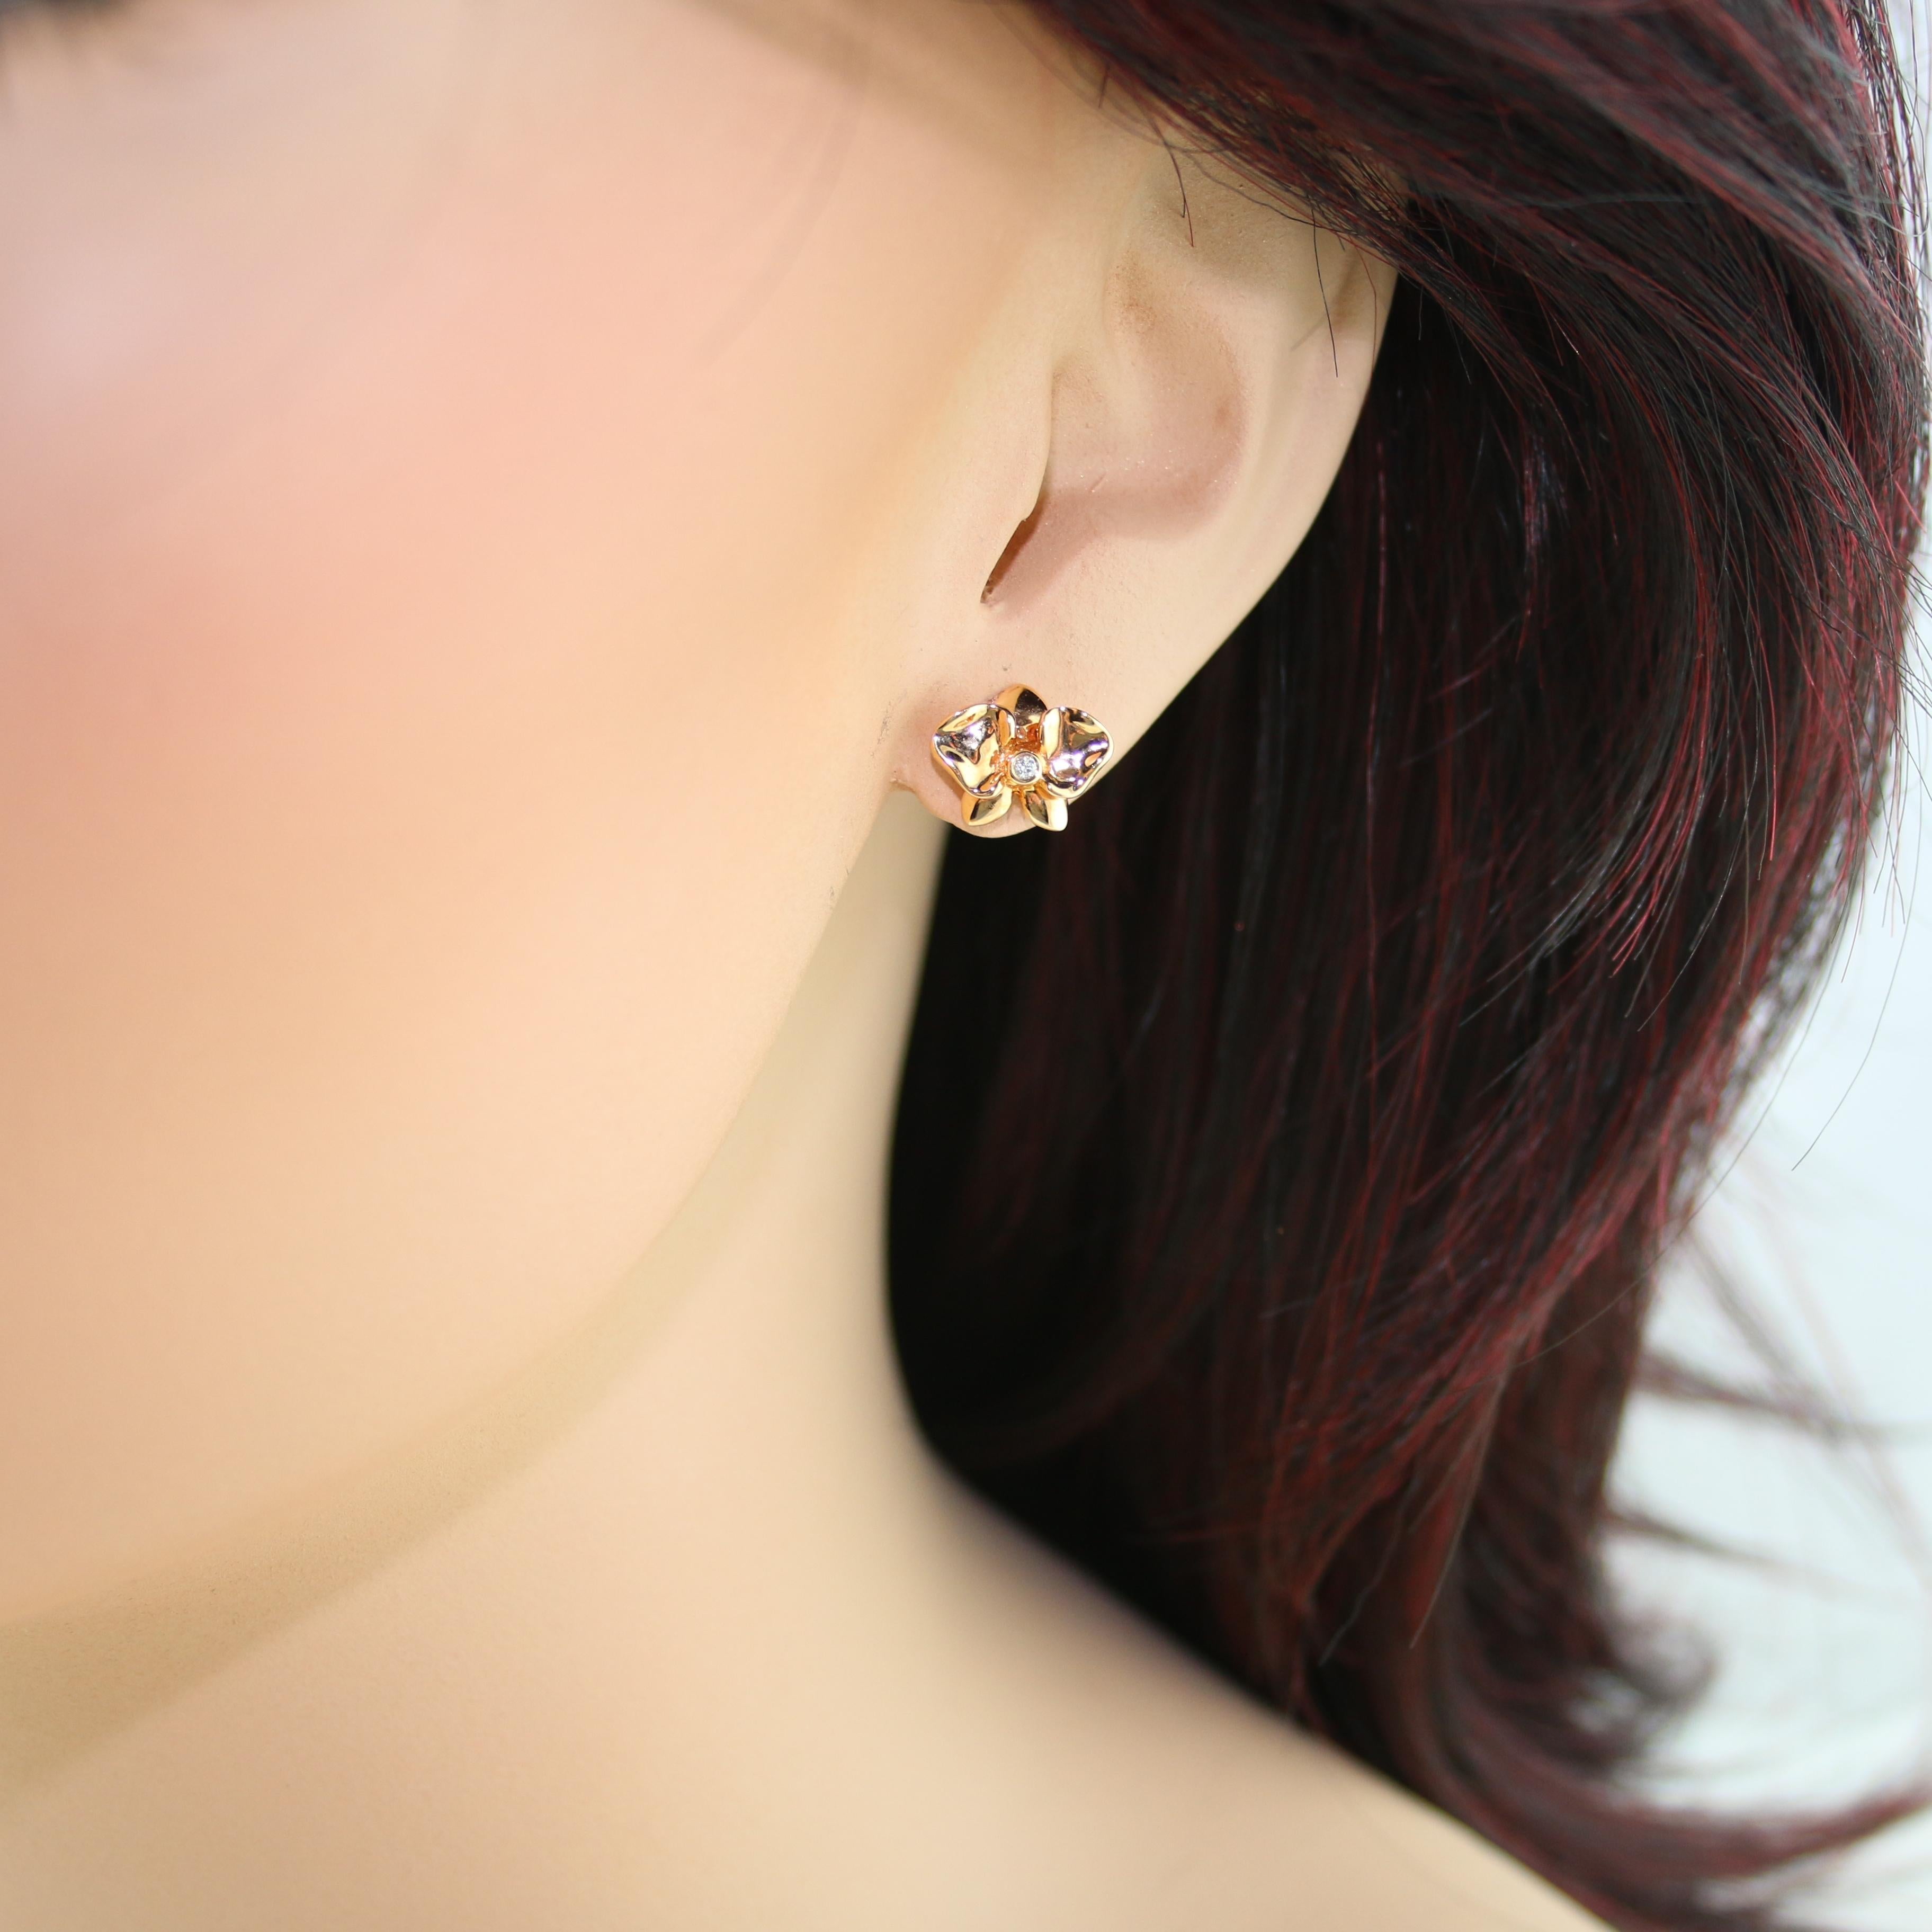 rose flower earrings gold